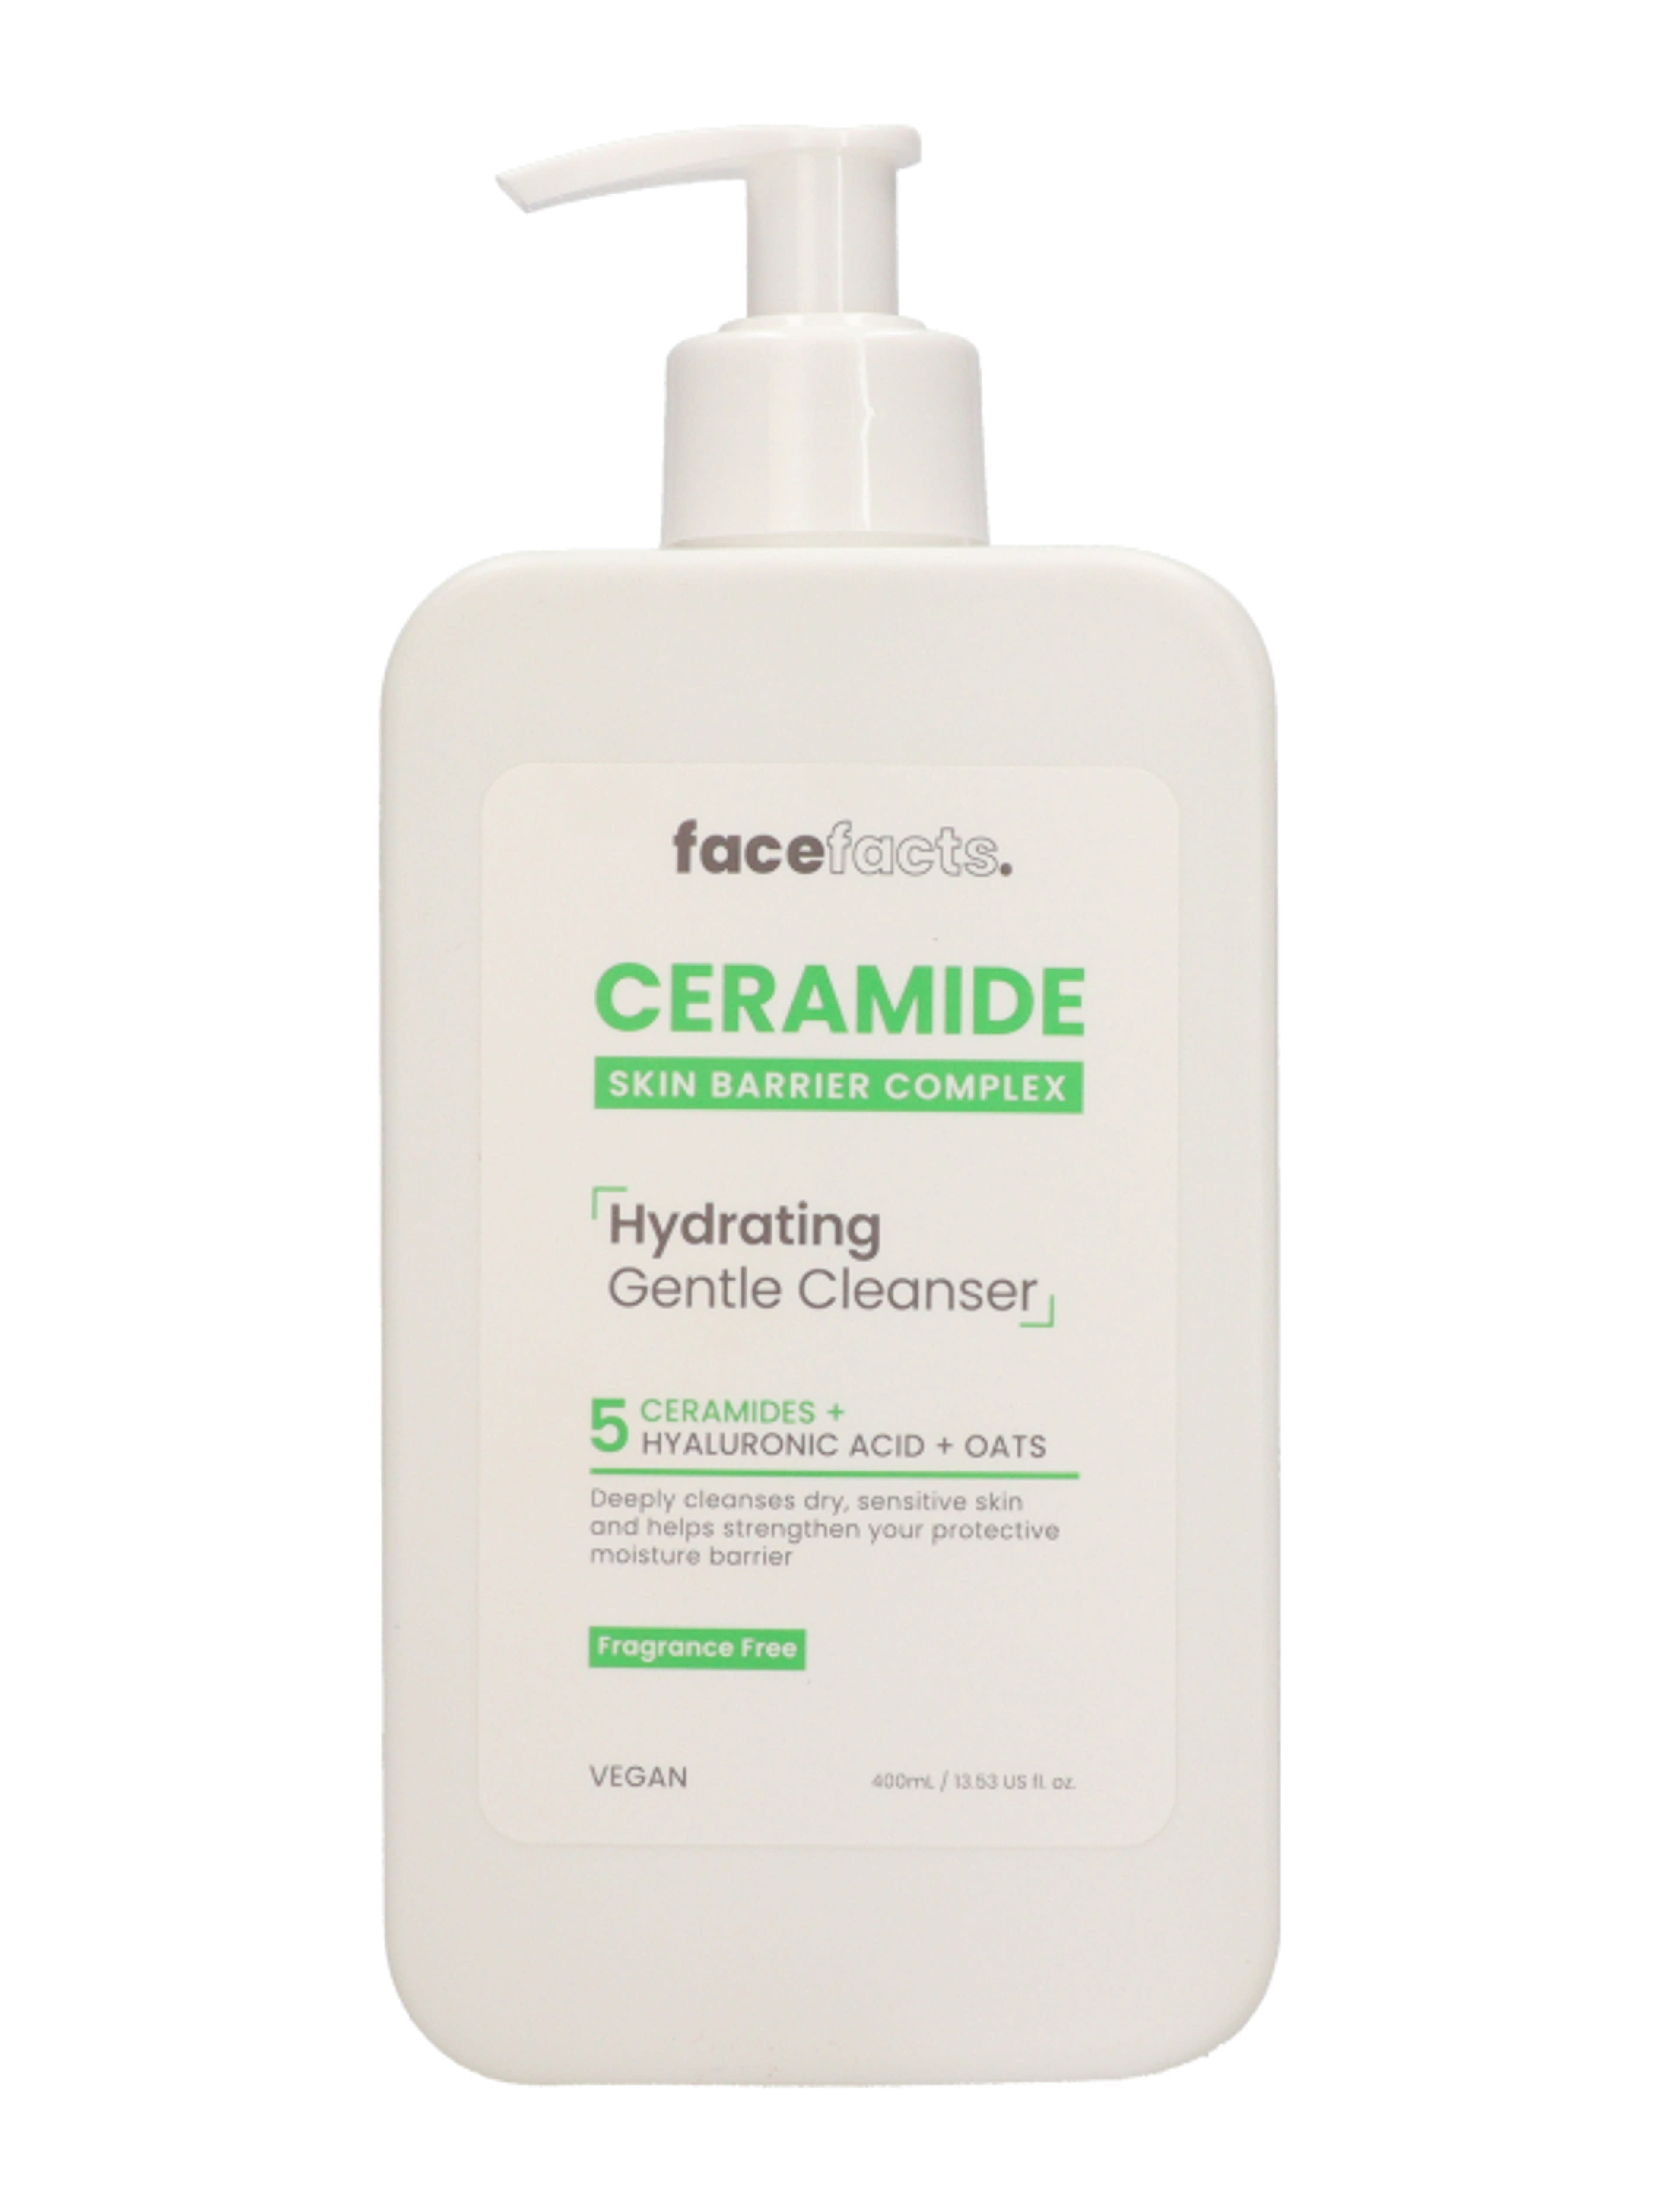 Face Facts Ceramide Hydrating Gentle Cleanser hidratáló arctisztító ceramidokkal - 400 ml-1